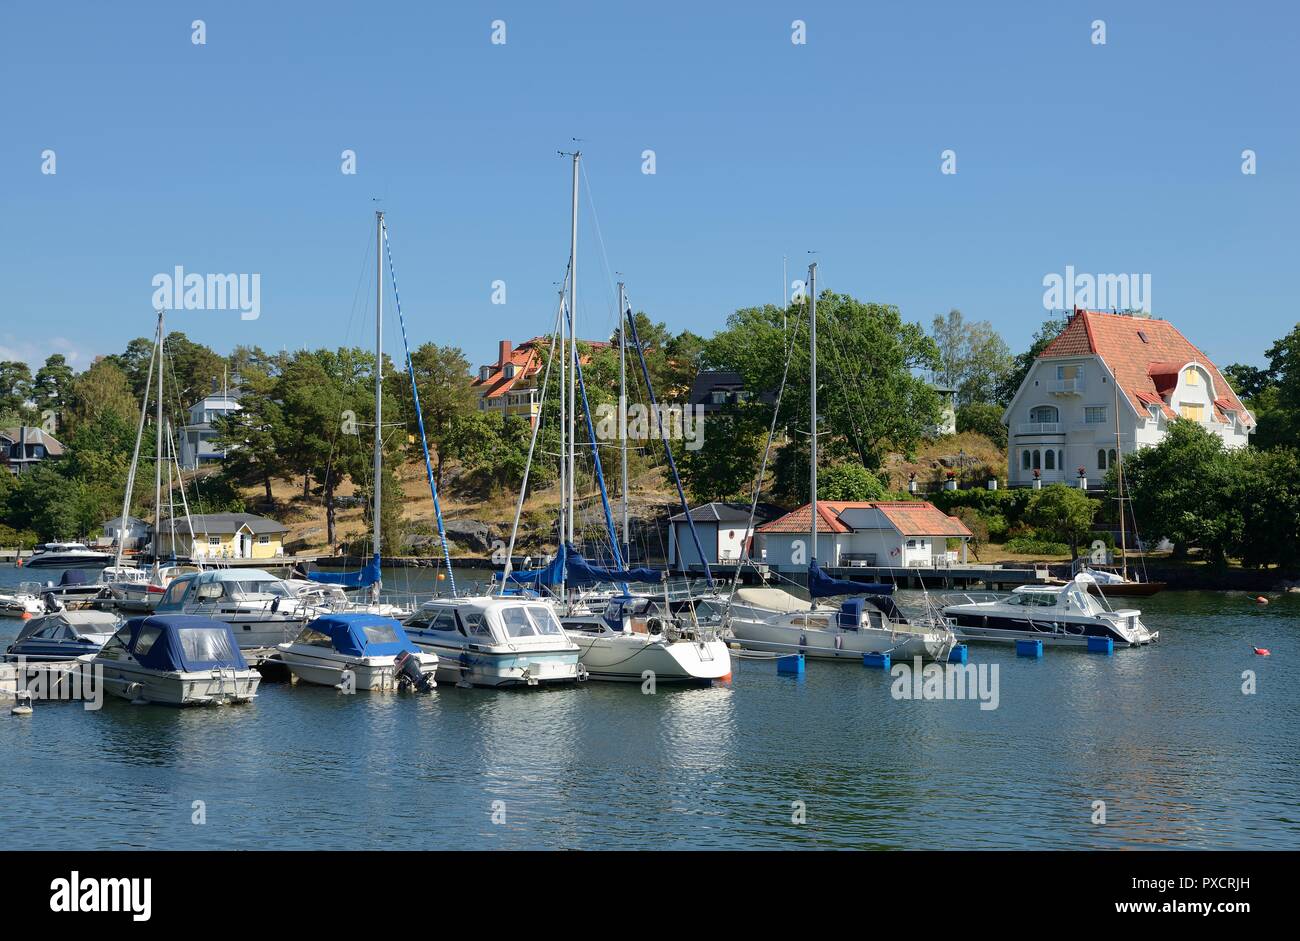 Nynshamn Archipelago with marina in summer and blue sky Stock Photo